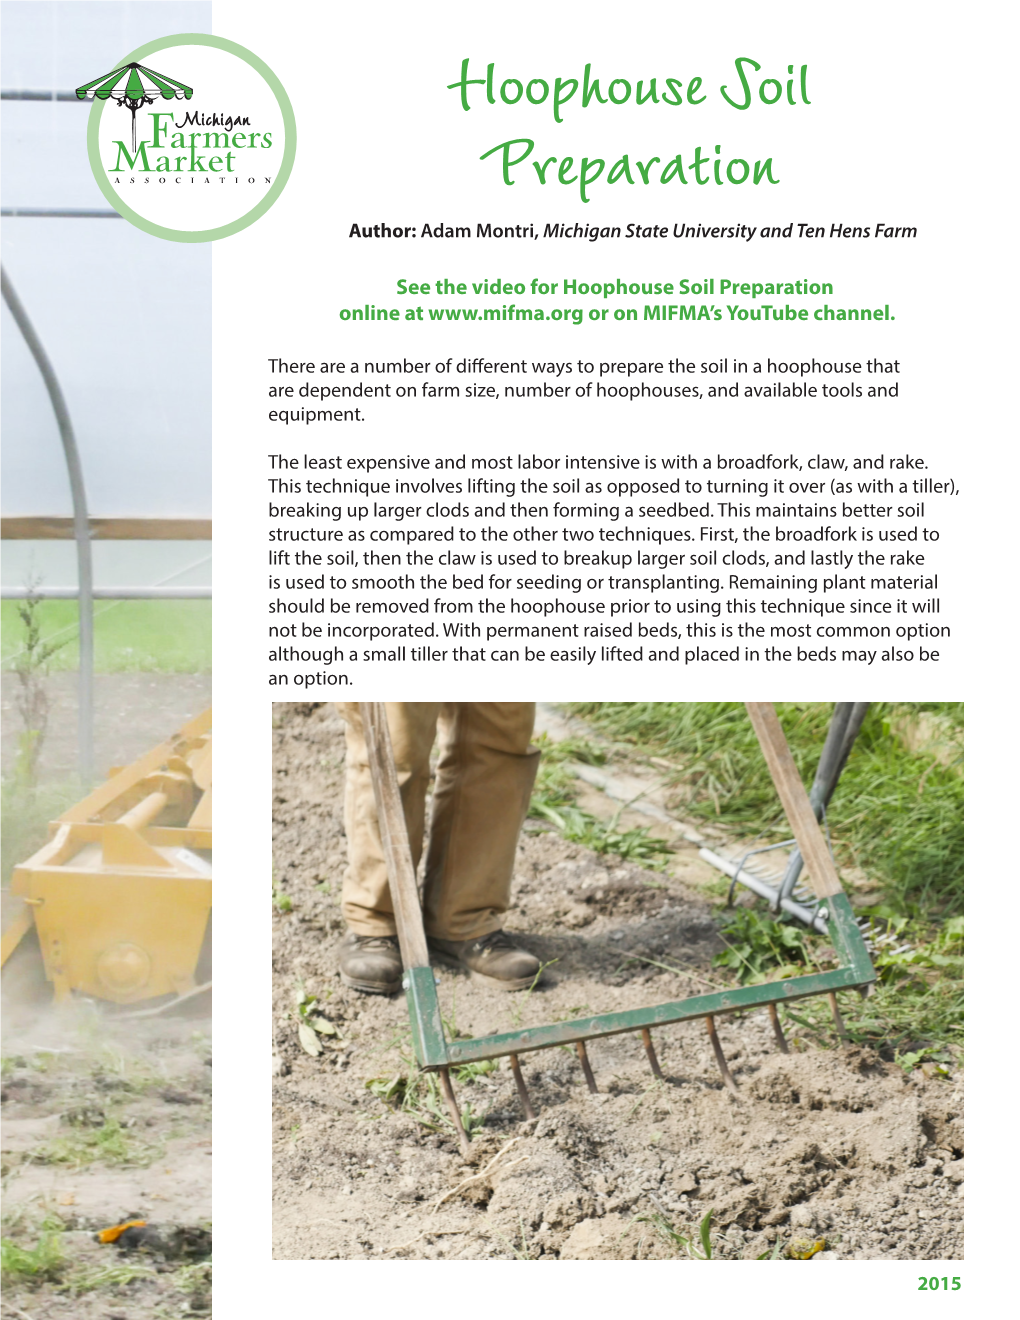 Hoophouse Soil Preparation Field Guide